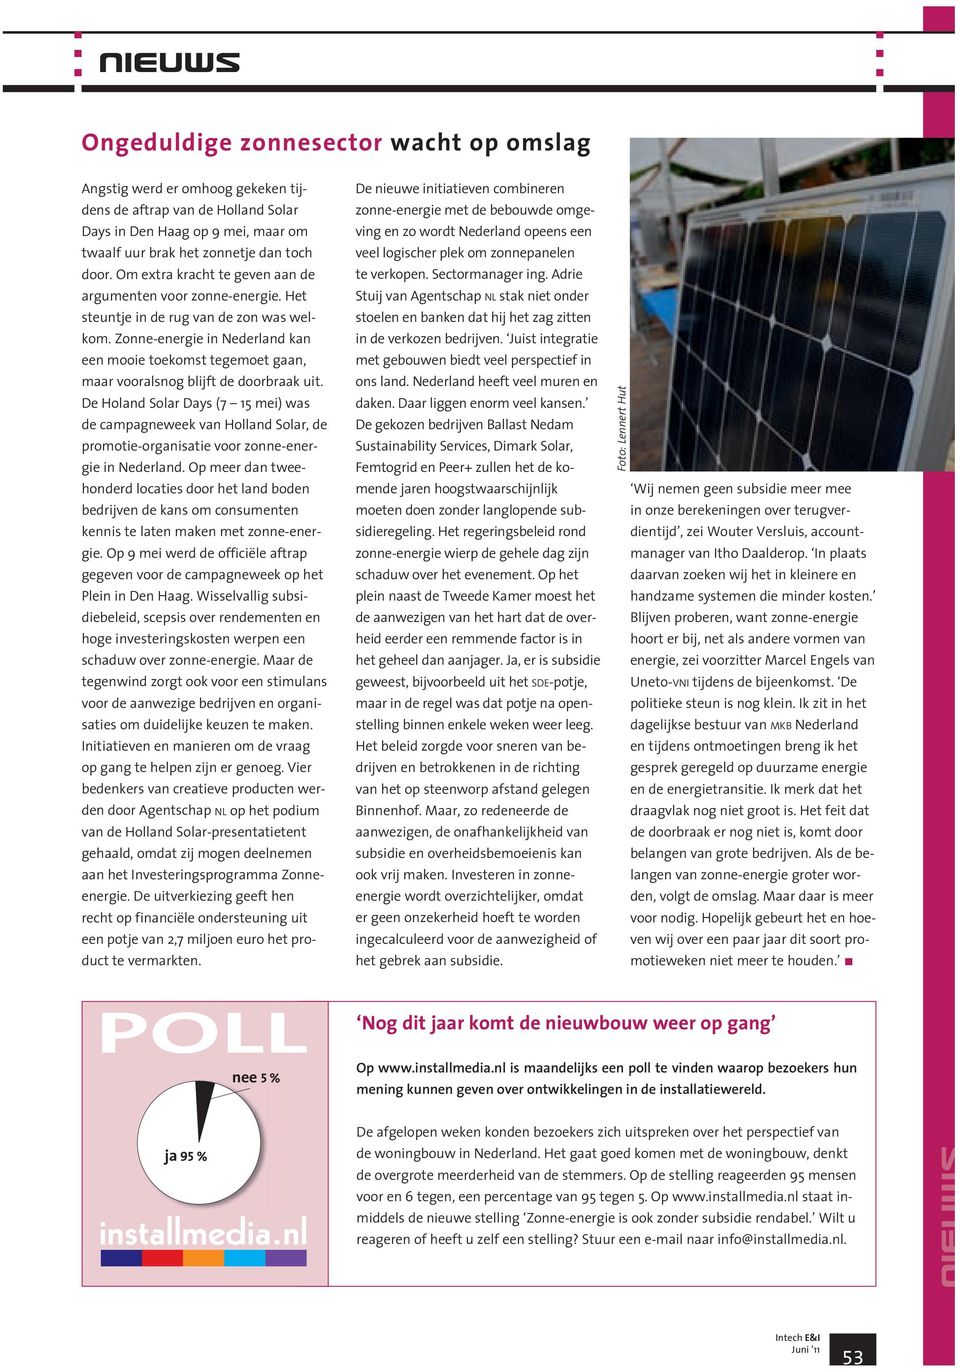 Zonne-energie in Nederland kan een mooie toekomst tegemoet gaan, maar vooralsnog blijft de doorbraak uit.